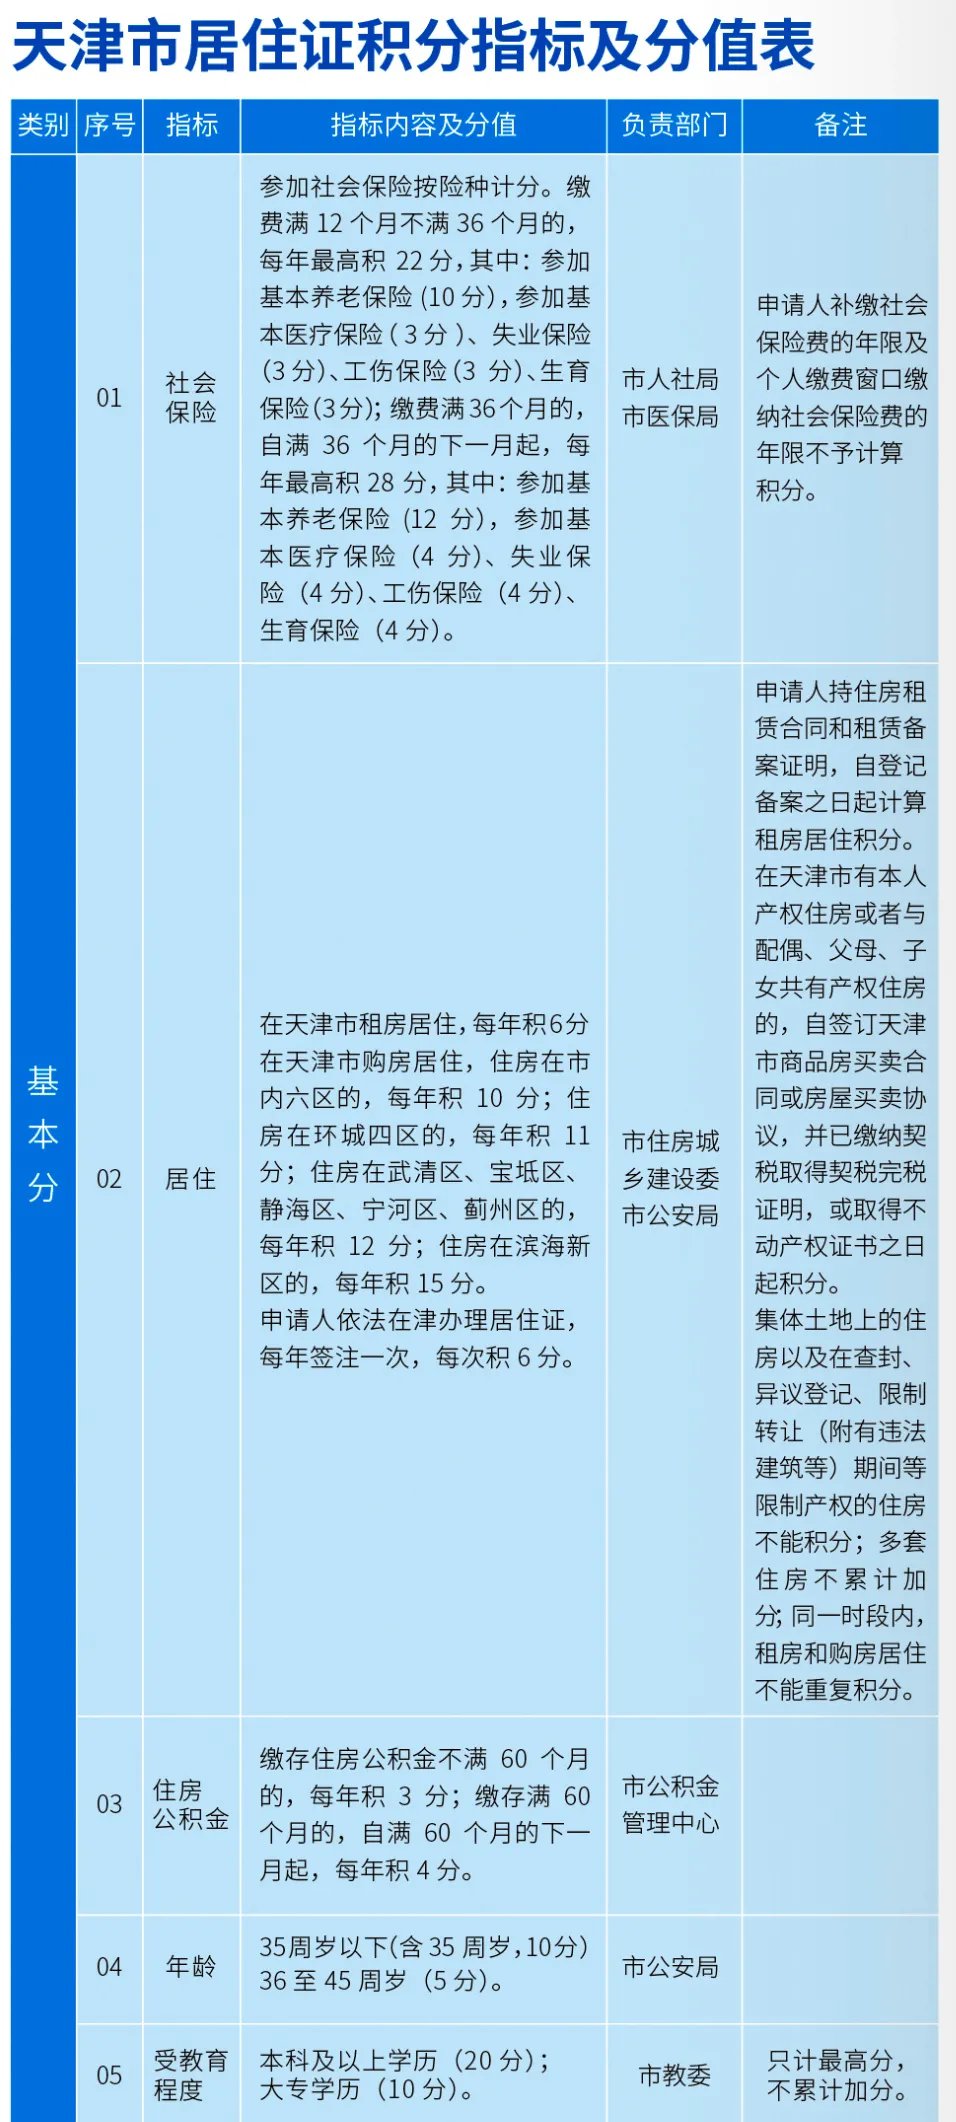 天津积分落户政策详解：申请步骤、资格要求、所需材料与注意事项